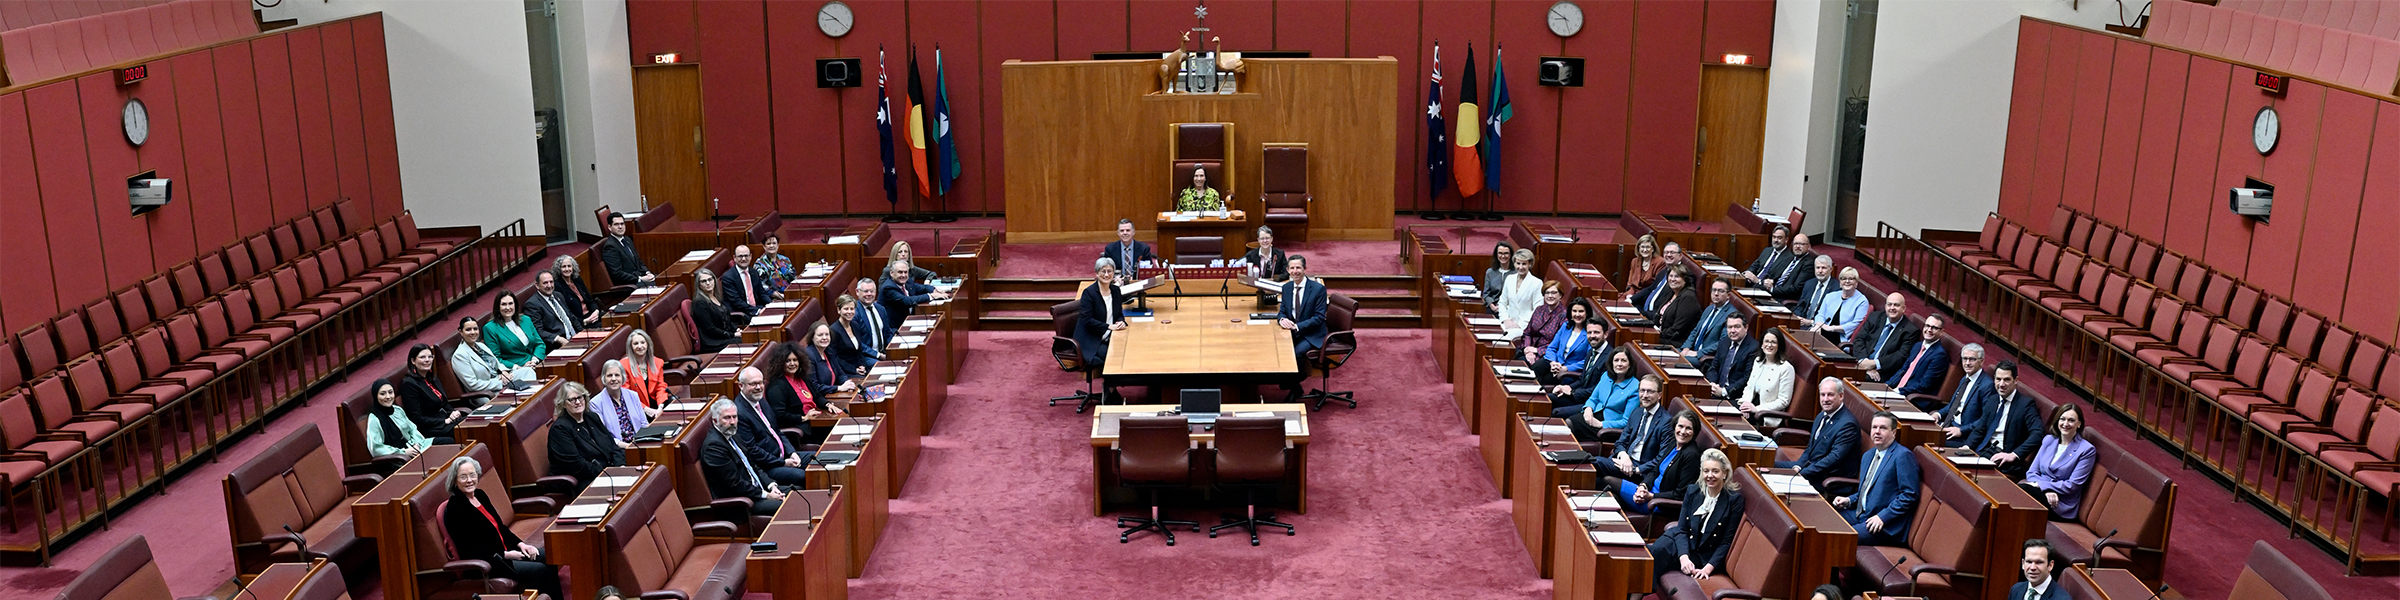 senate-parliament-of-australia